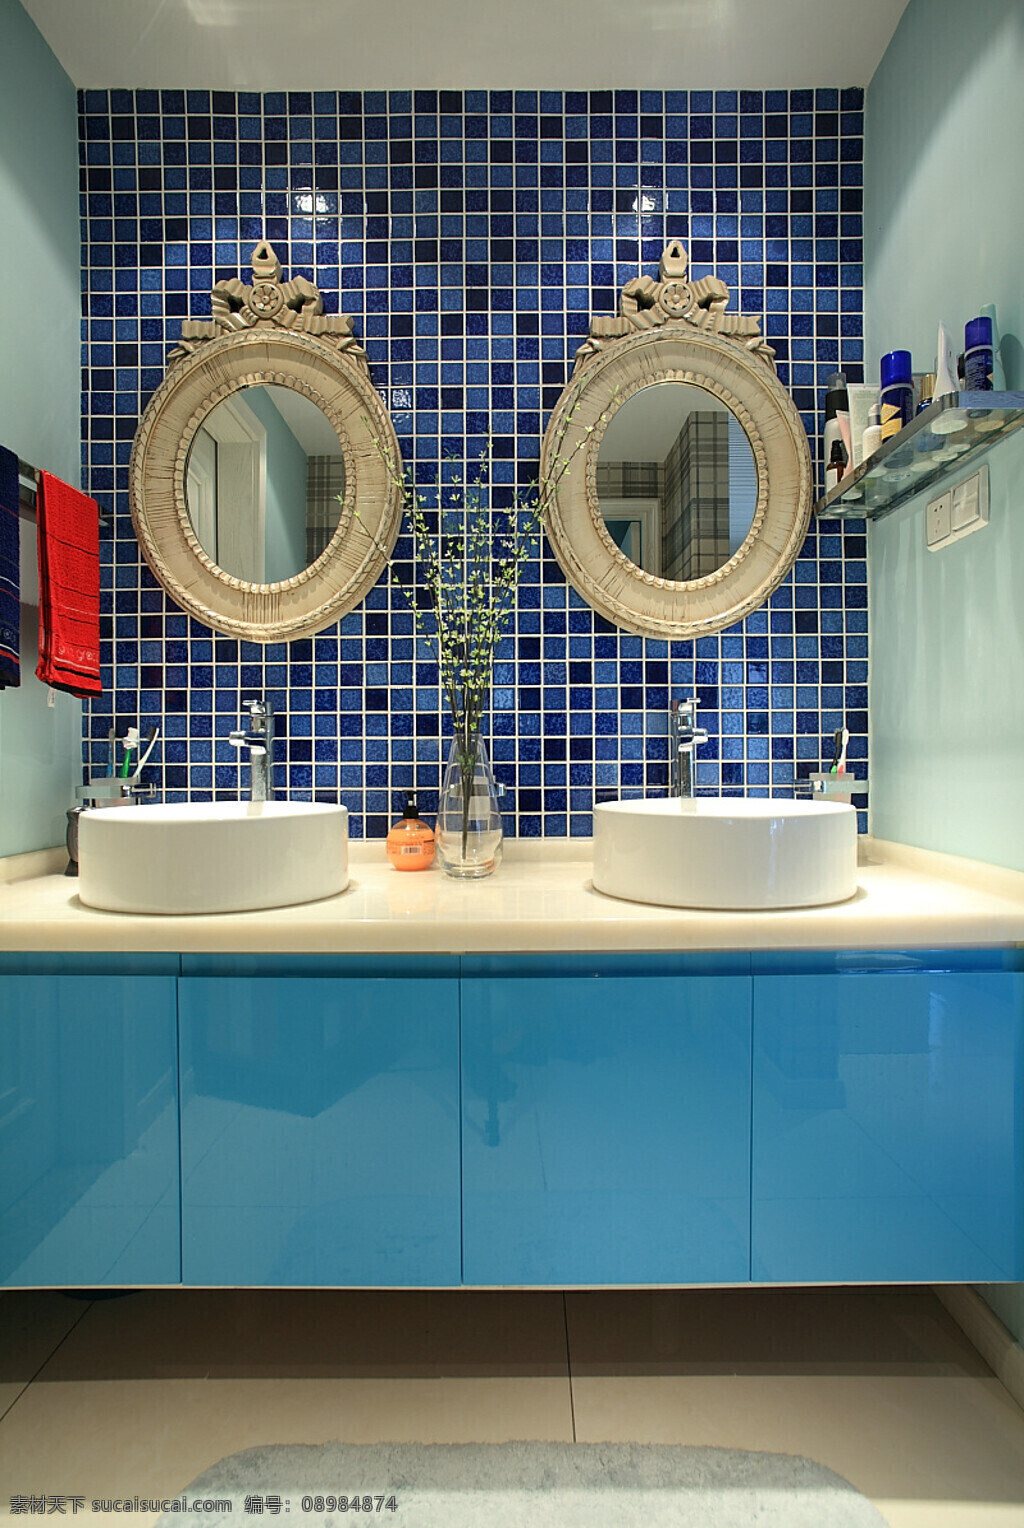 时尚 感 卫生间 蓝色 格子 背景 墙 室内装修 效果图 瓷砖地板 卫生间装修 亮蓝色柜子